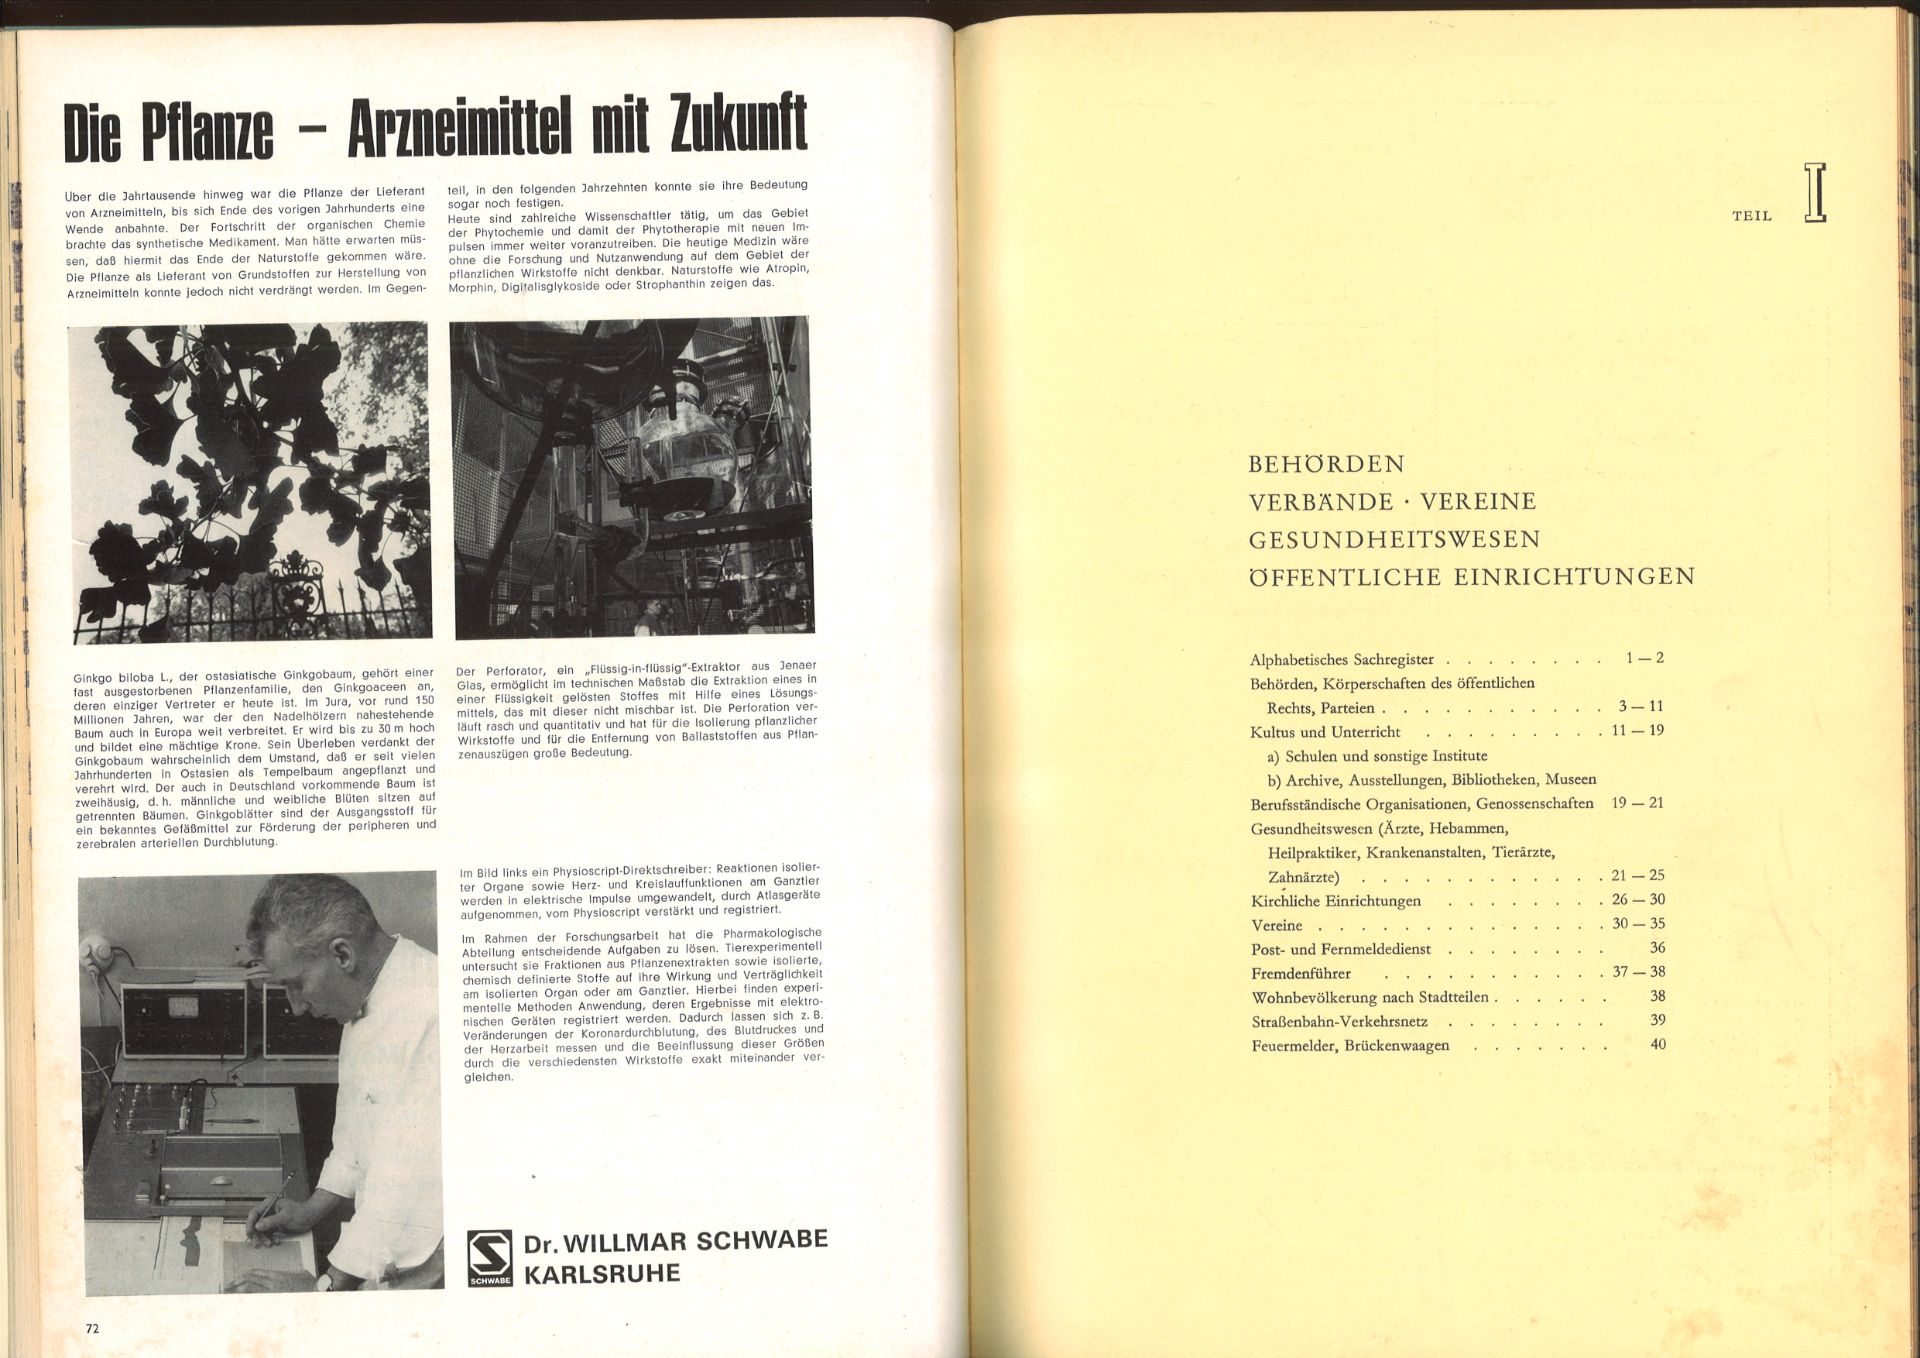 Adressbuch der Stadt Karlsruhe von 1974, siebenundneunzigster Jahrgang, Adressbuchverlag G.Braun, - Bild 2 aus 2